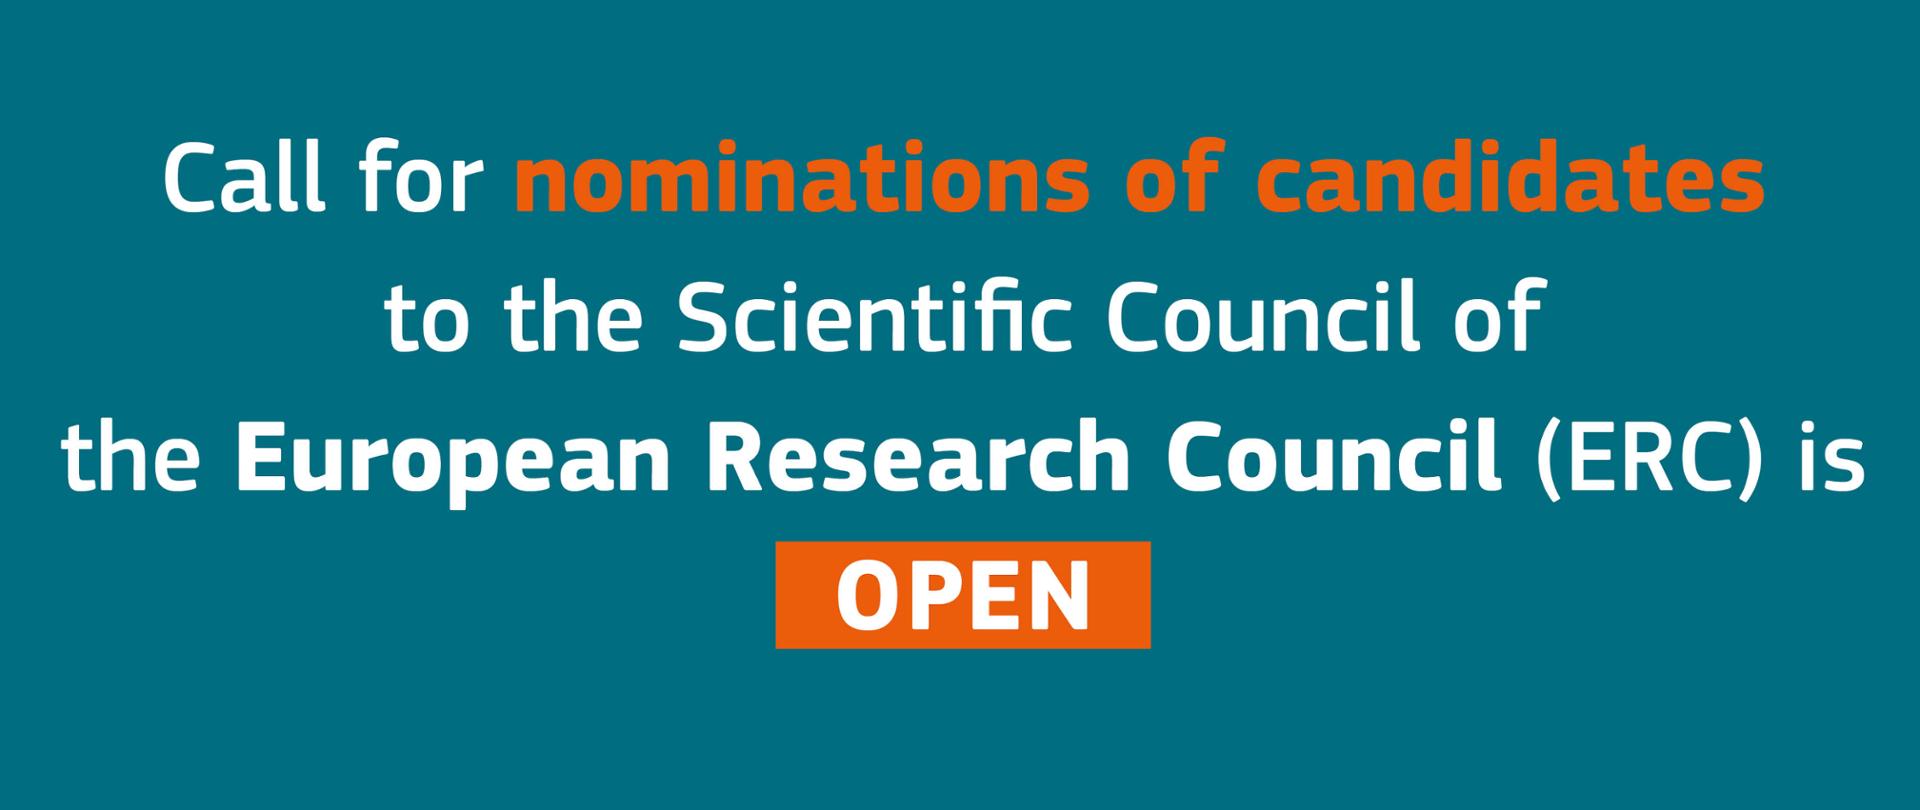 Komisja Europejska poszukuje kandydatów do Europejskiej Rady ds. Badań Naukowych (ERC)